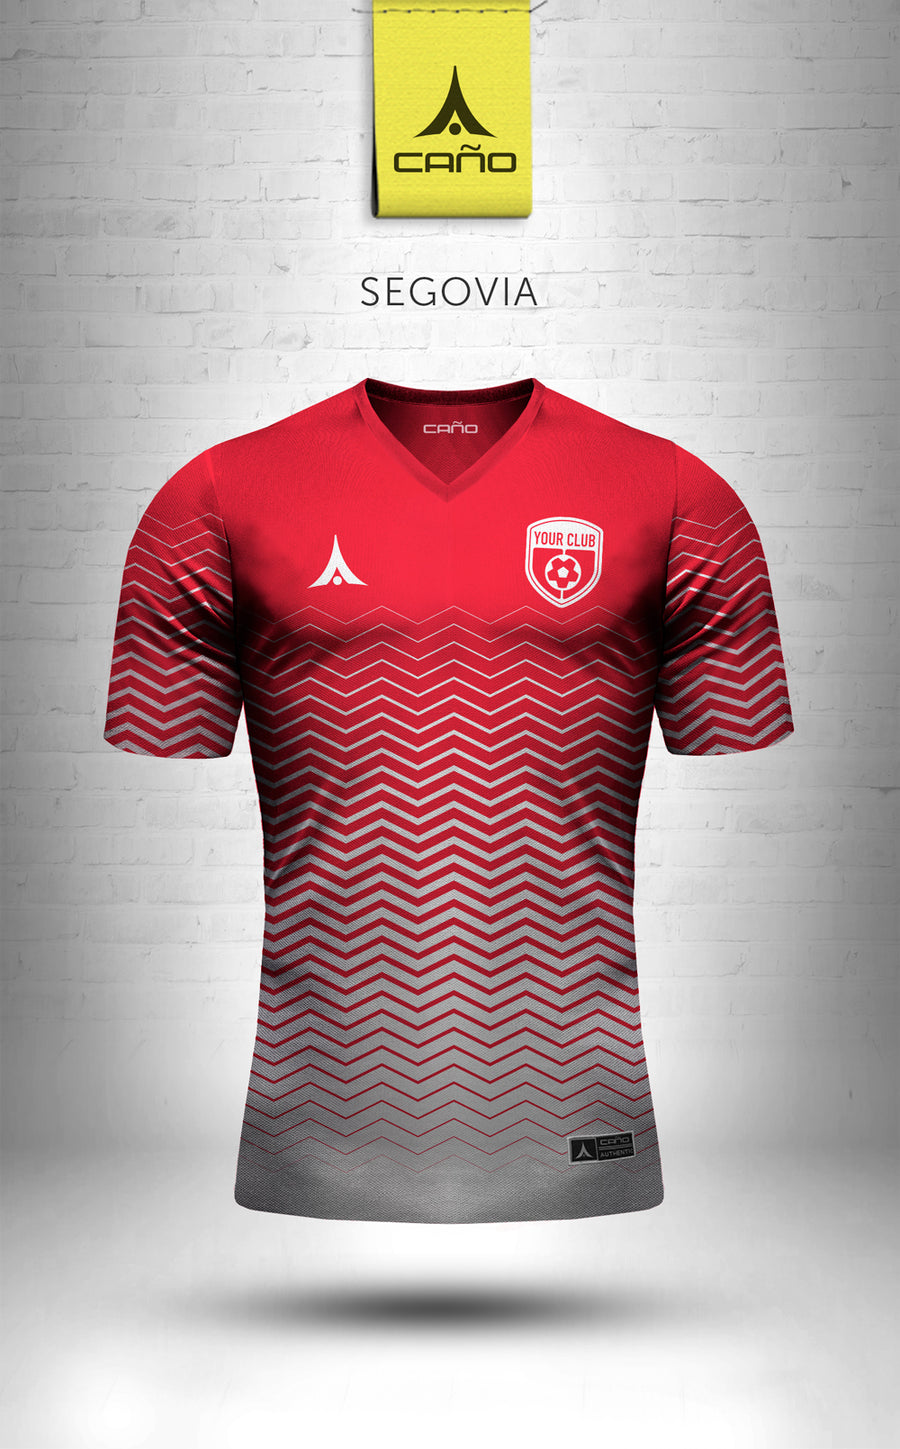 Segovia in red/white